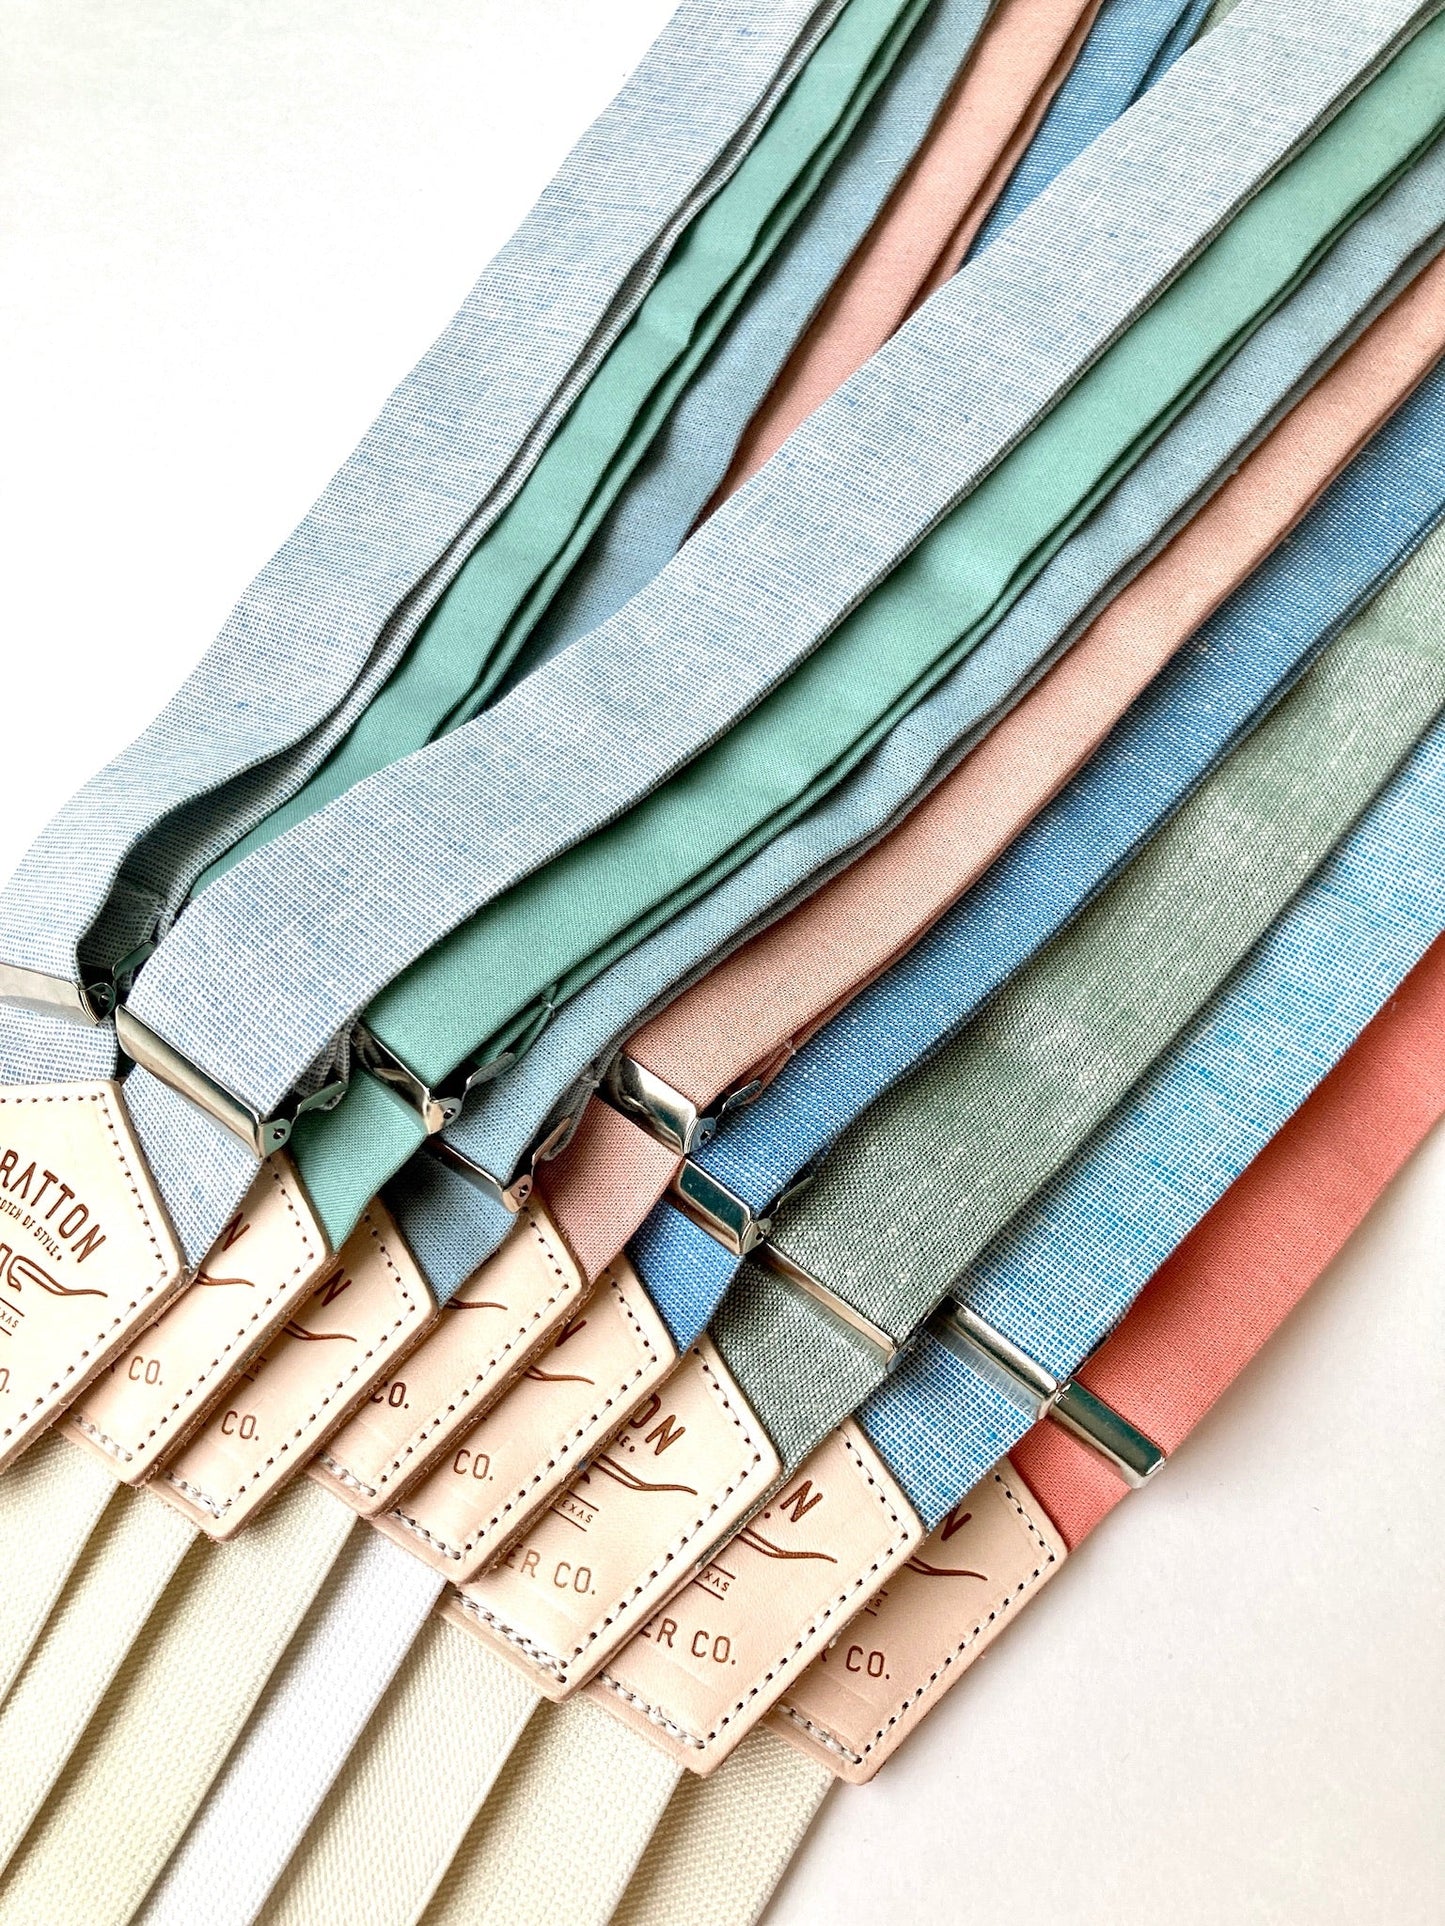 Paris Blue Homespun Linen Button-On Suspenders Set - Summer 2023